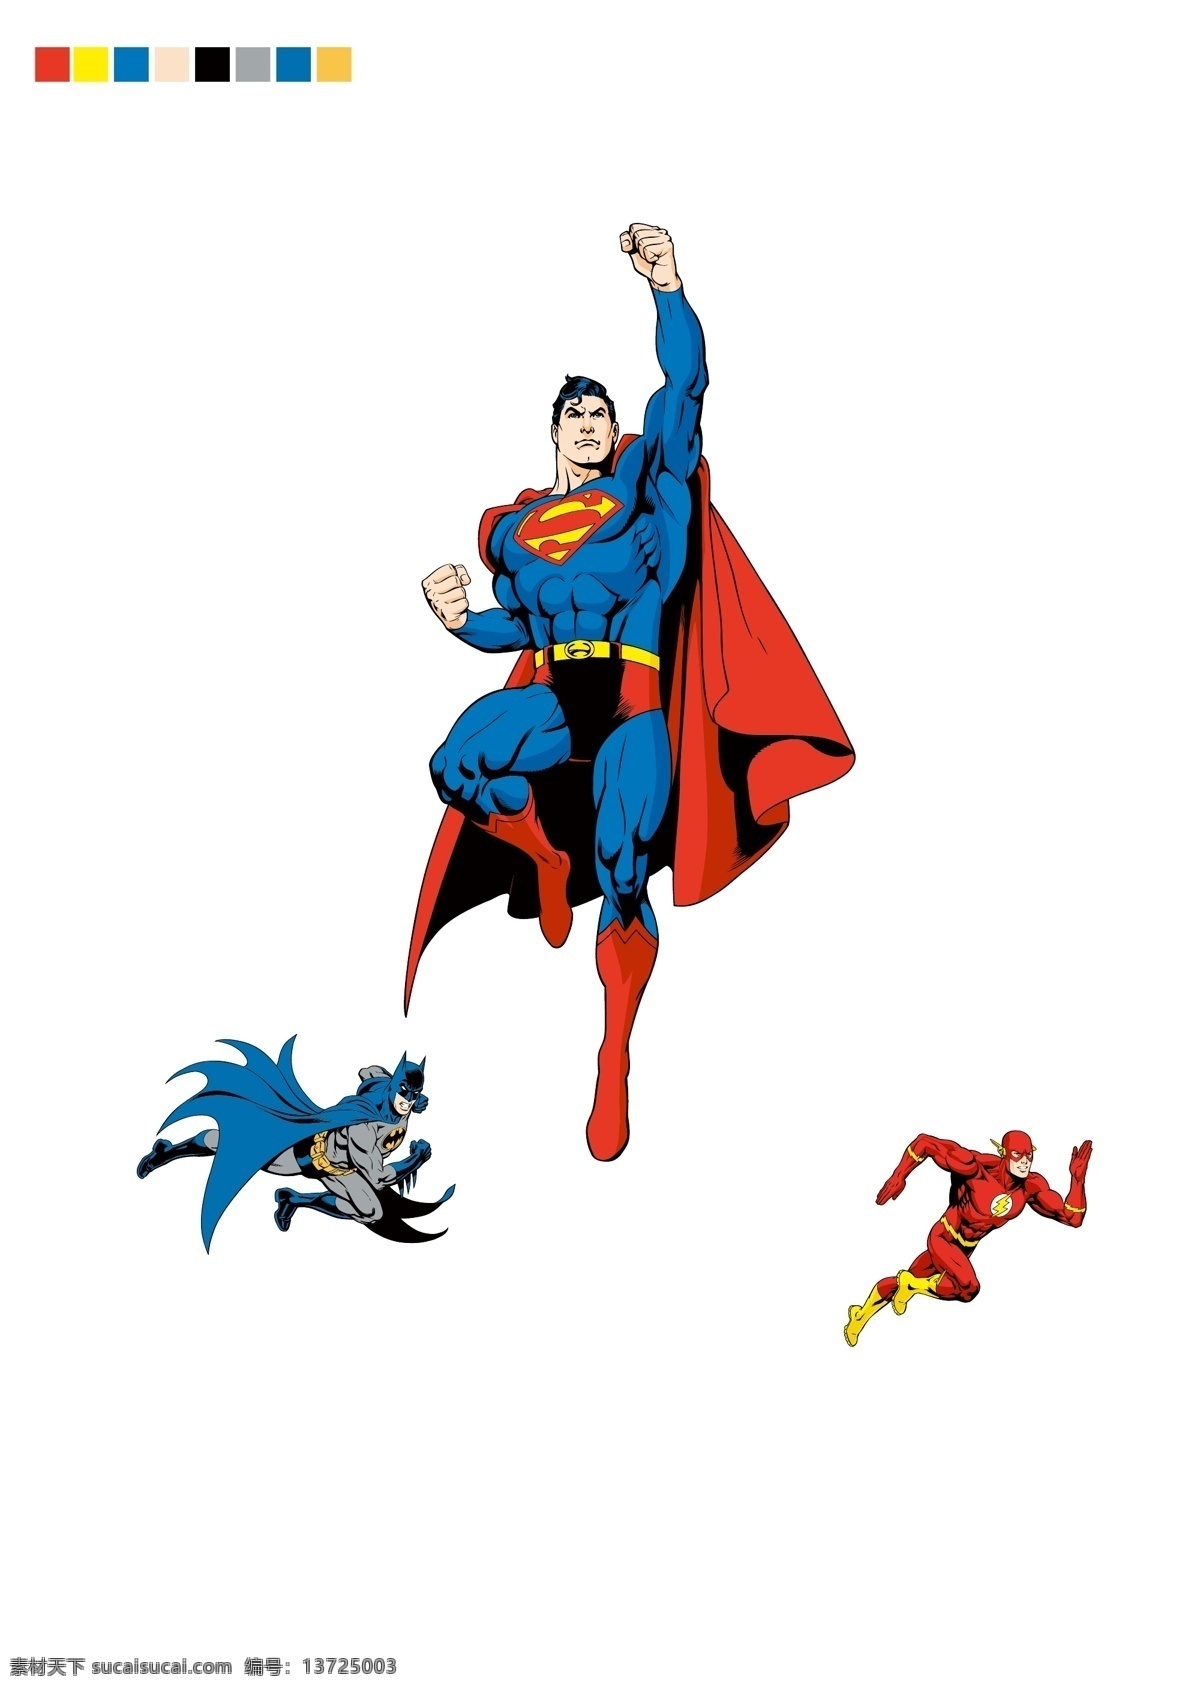 超人 蝙蝠侠 superman batman 华纳 dc漫画 超级英雄 英雄联盟 卡通形象 其他人物 矢量人物 矢量